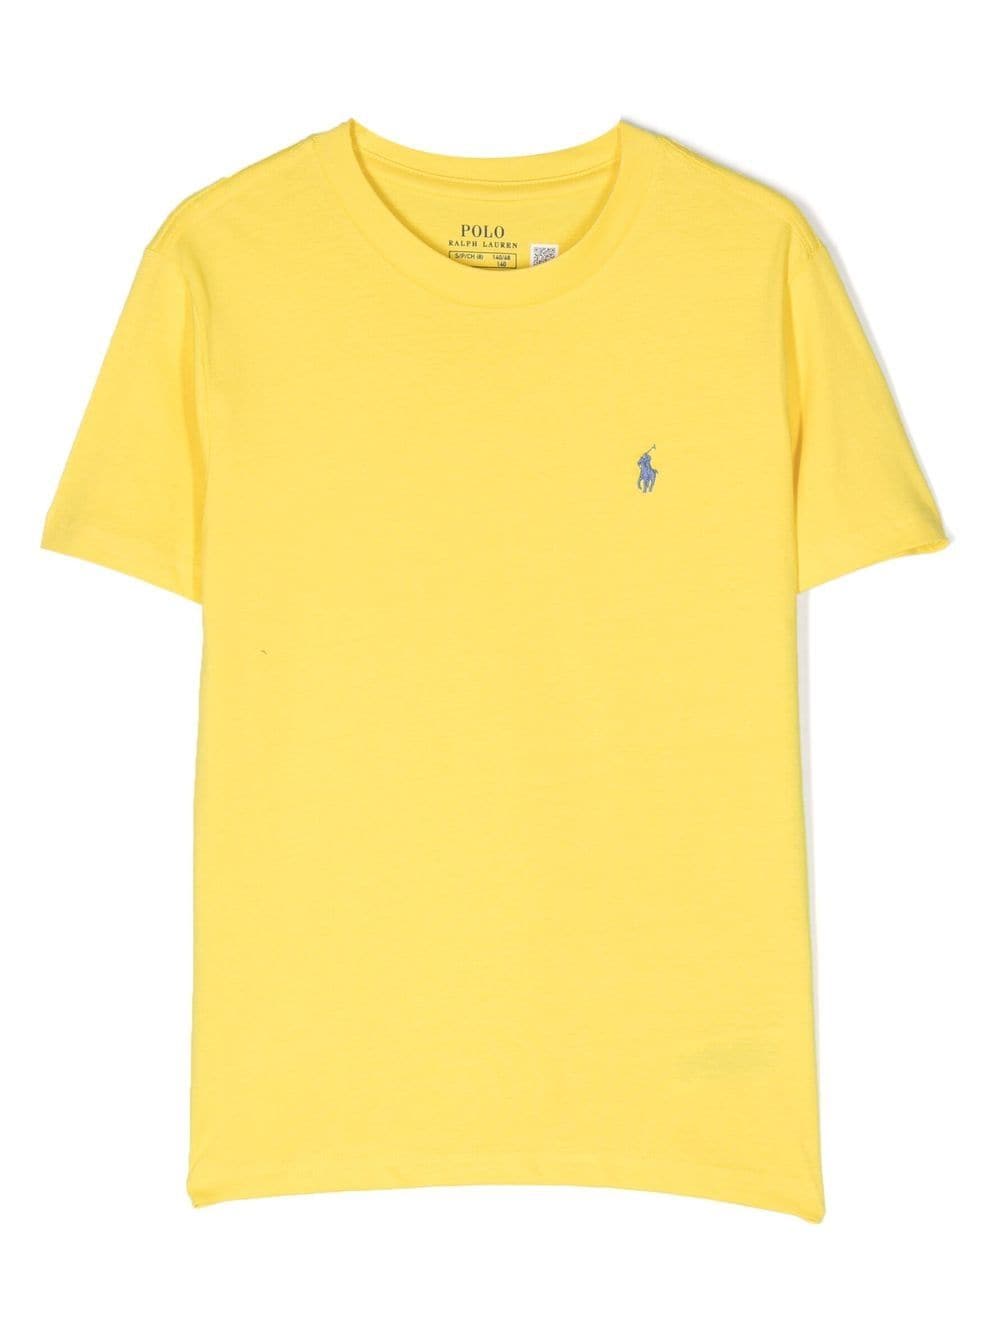 T-shirt gialla a maniche corte con stampa logo